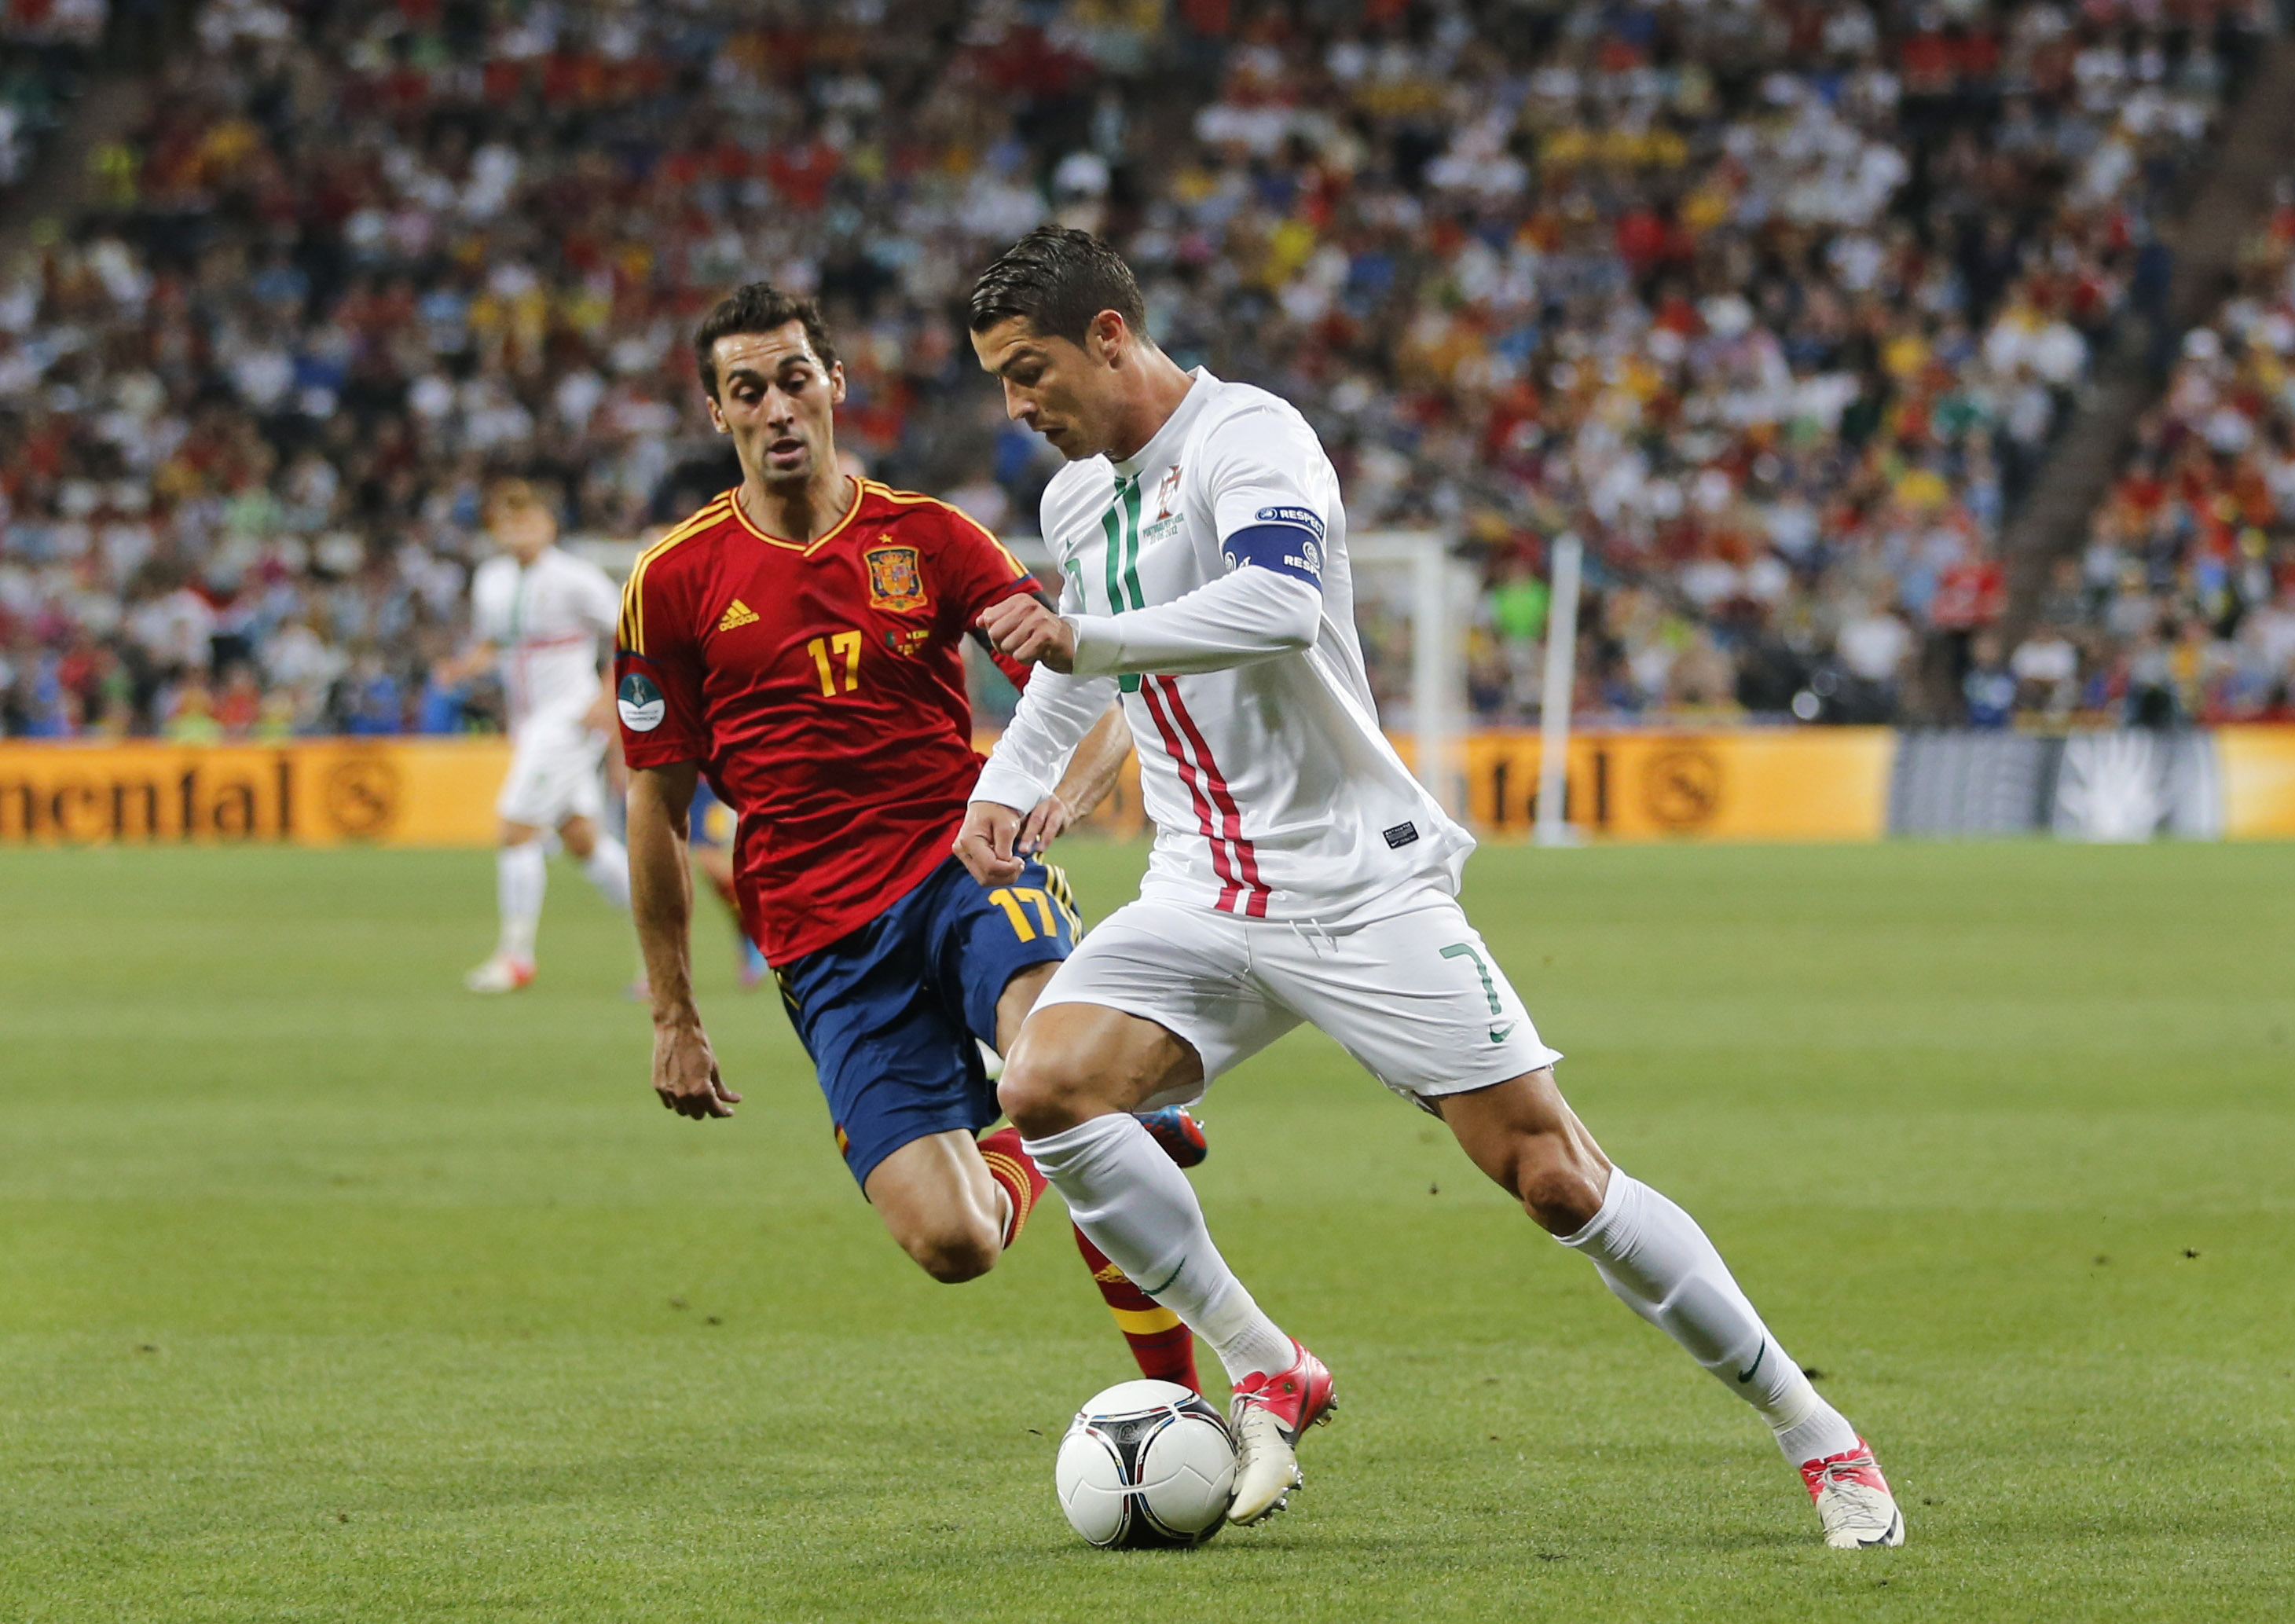 Alvaro Arbeloa jagar Ronaldo som har full kontroll över bollen.